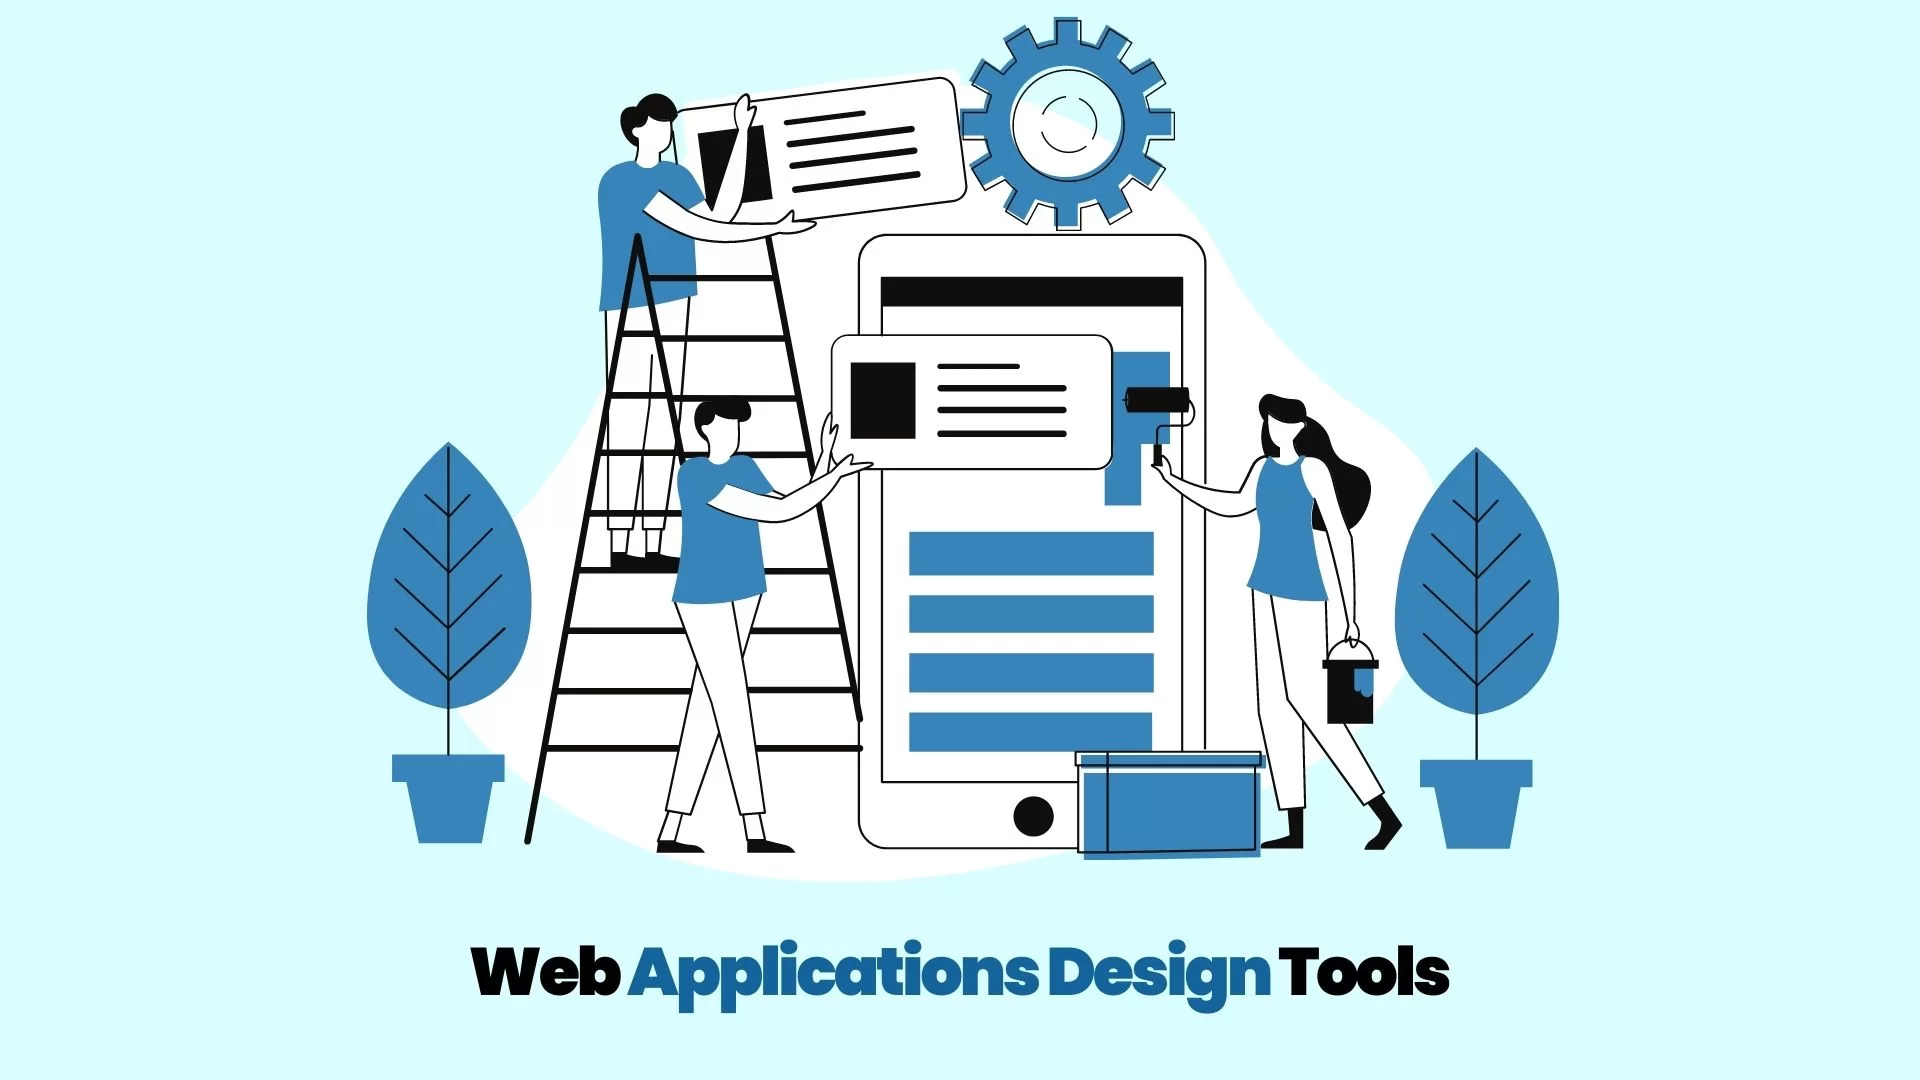 Web Applications Design Tools